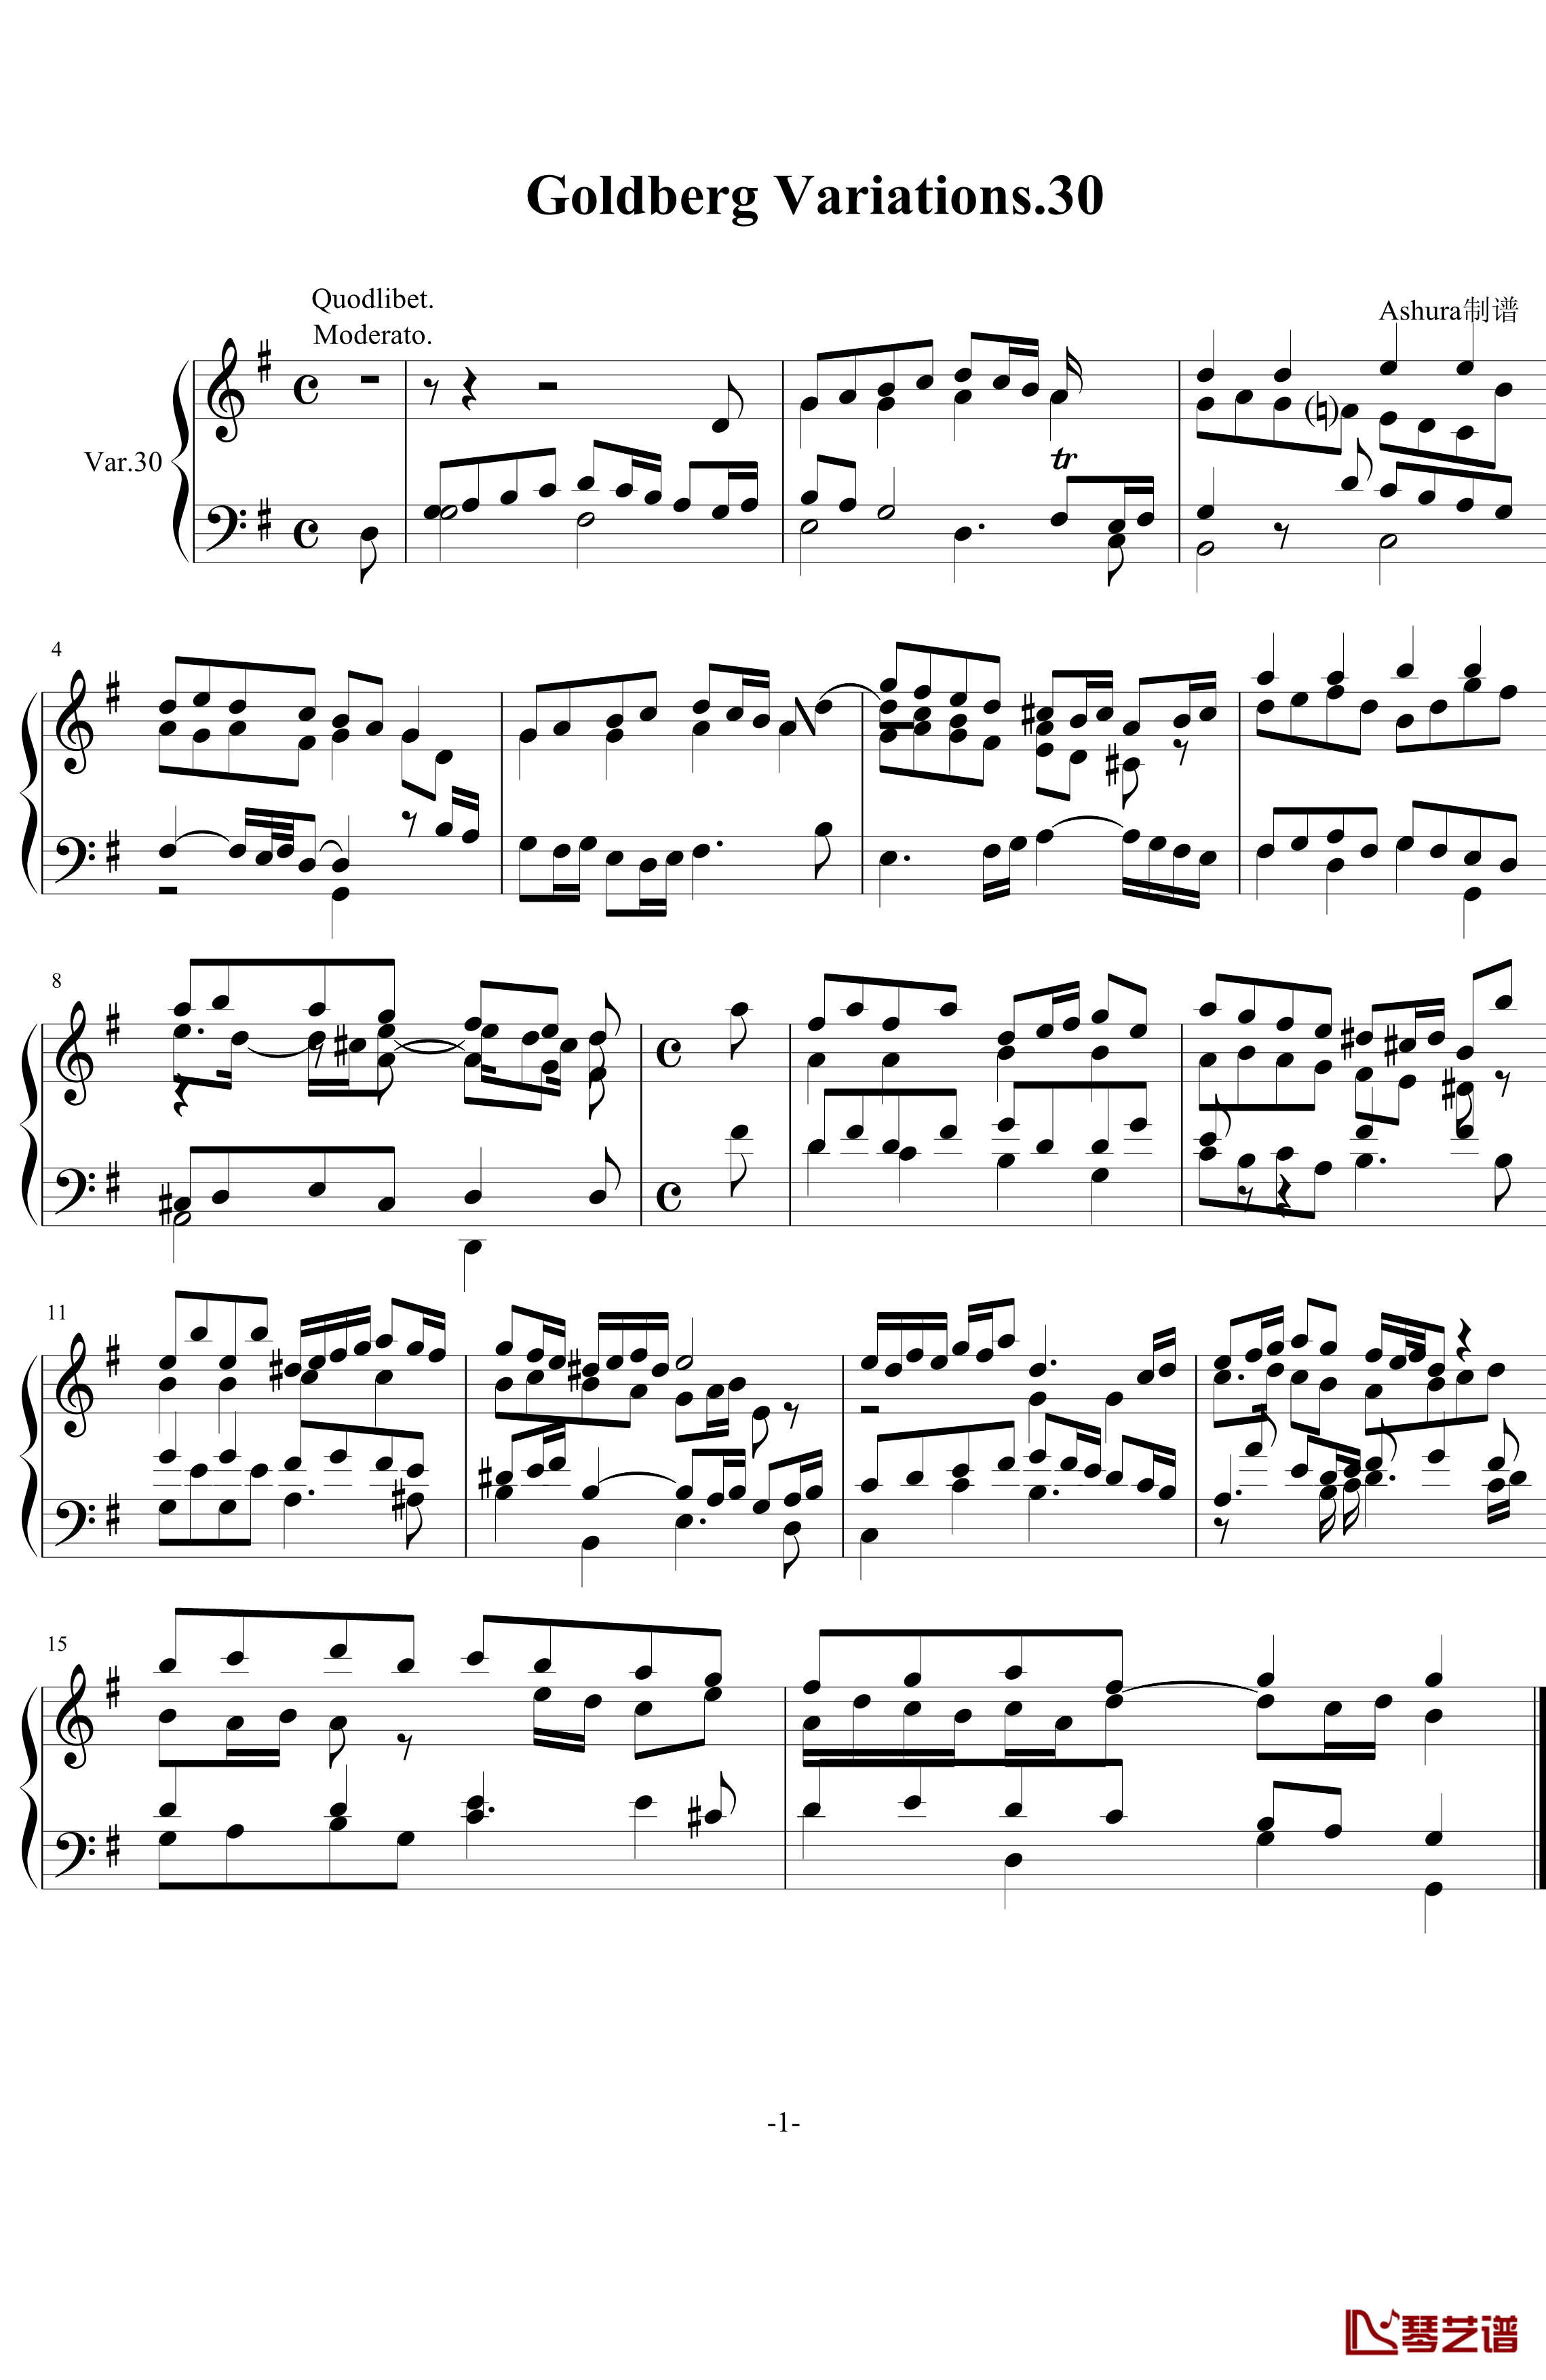 哥德堡变奏曲第30变奏.终曲钢琴谱-巴赫-P.E.Bach1